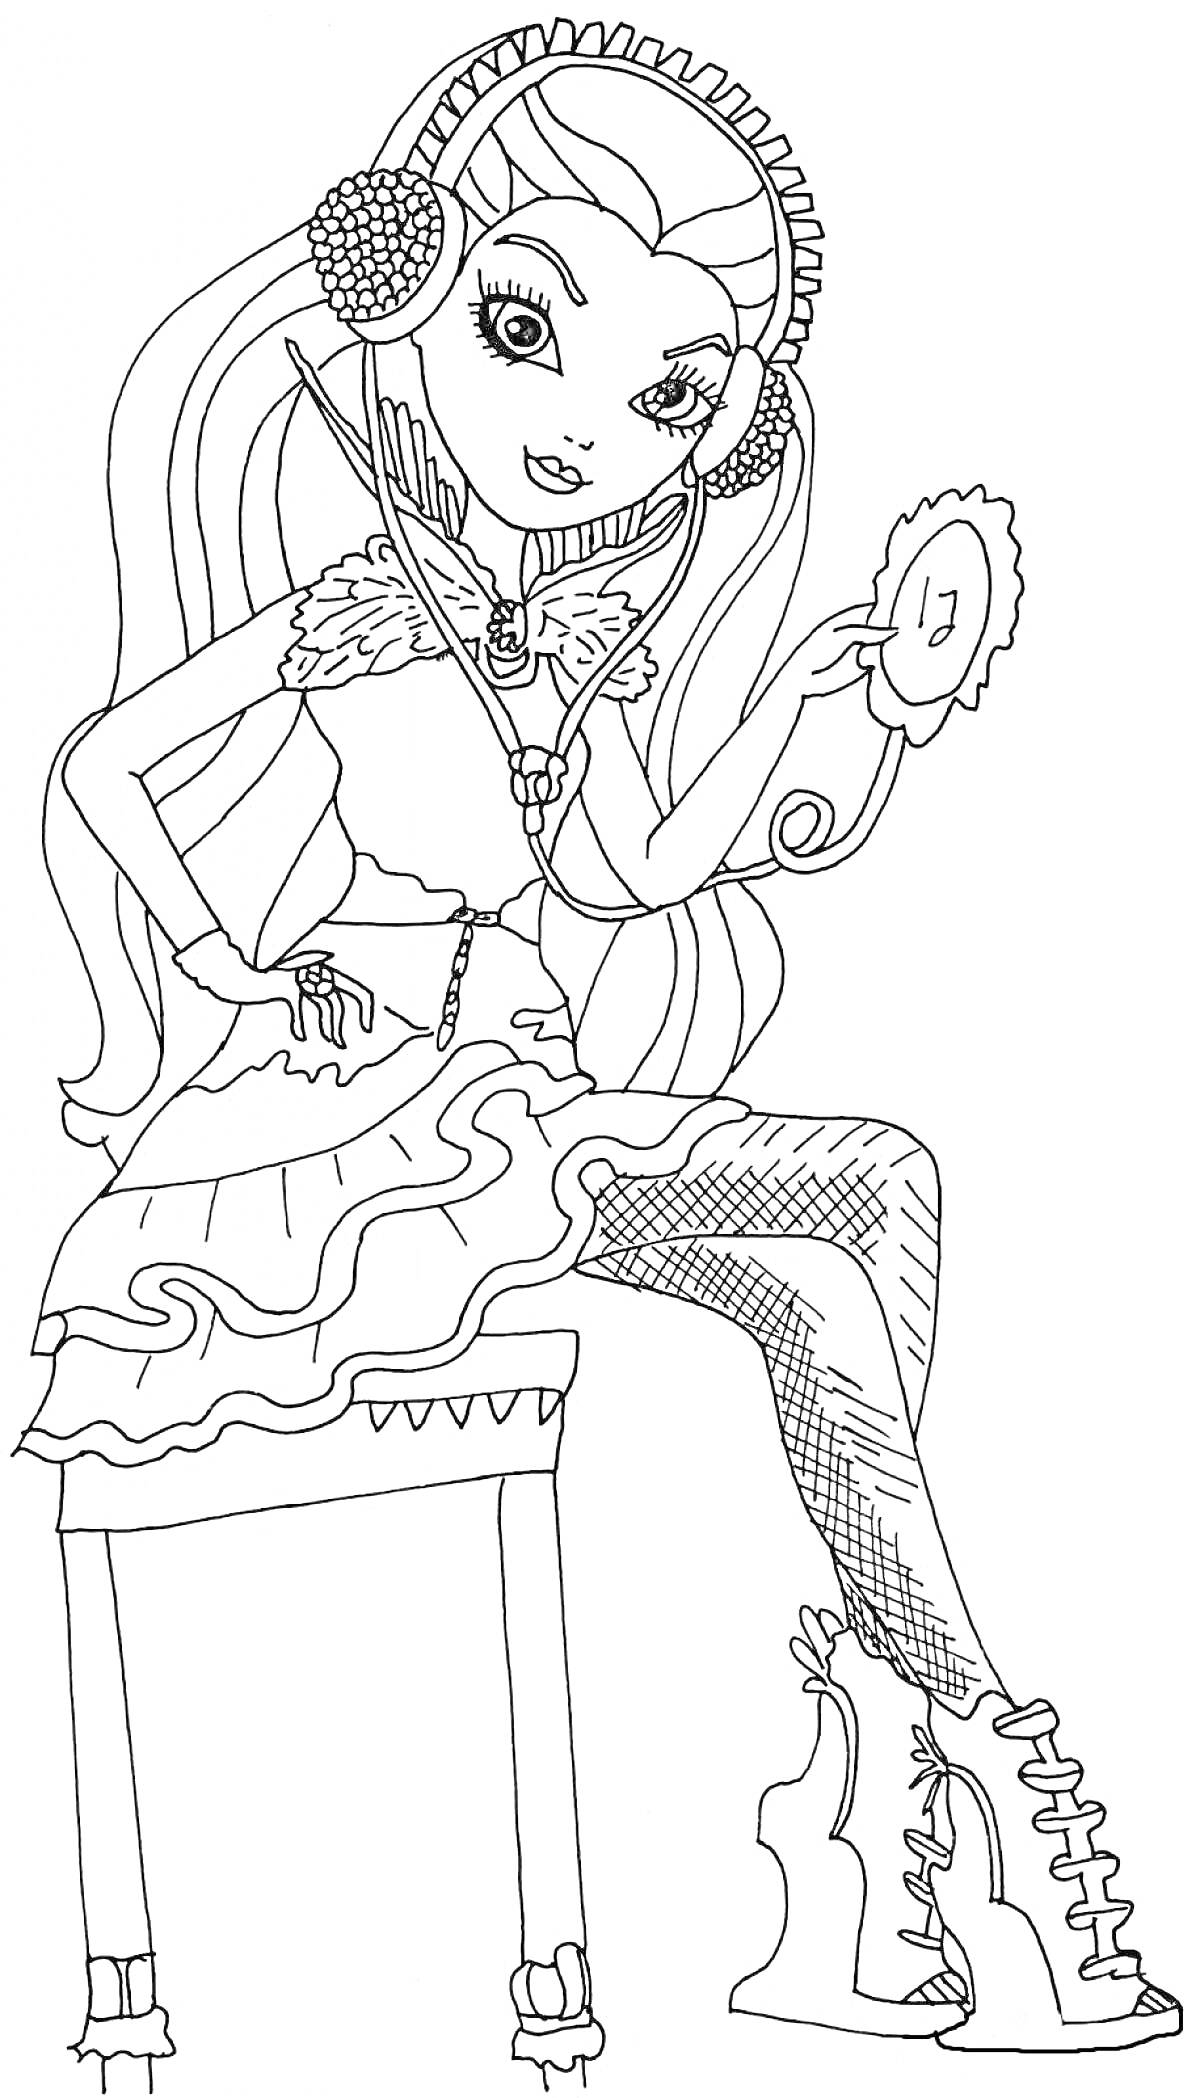 Раскраска Девушка из Эвер Афтер Хай в наушниках и мини-платье с оборками, сидящая на скамейке и смотрящаяся в зеркало.